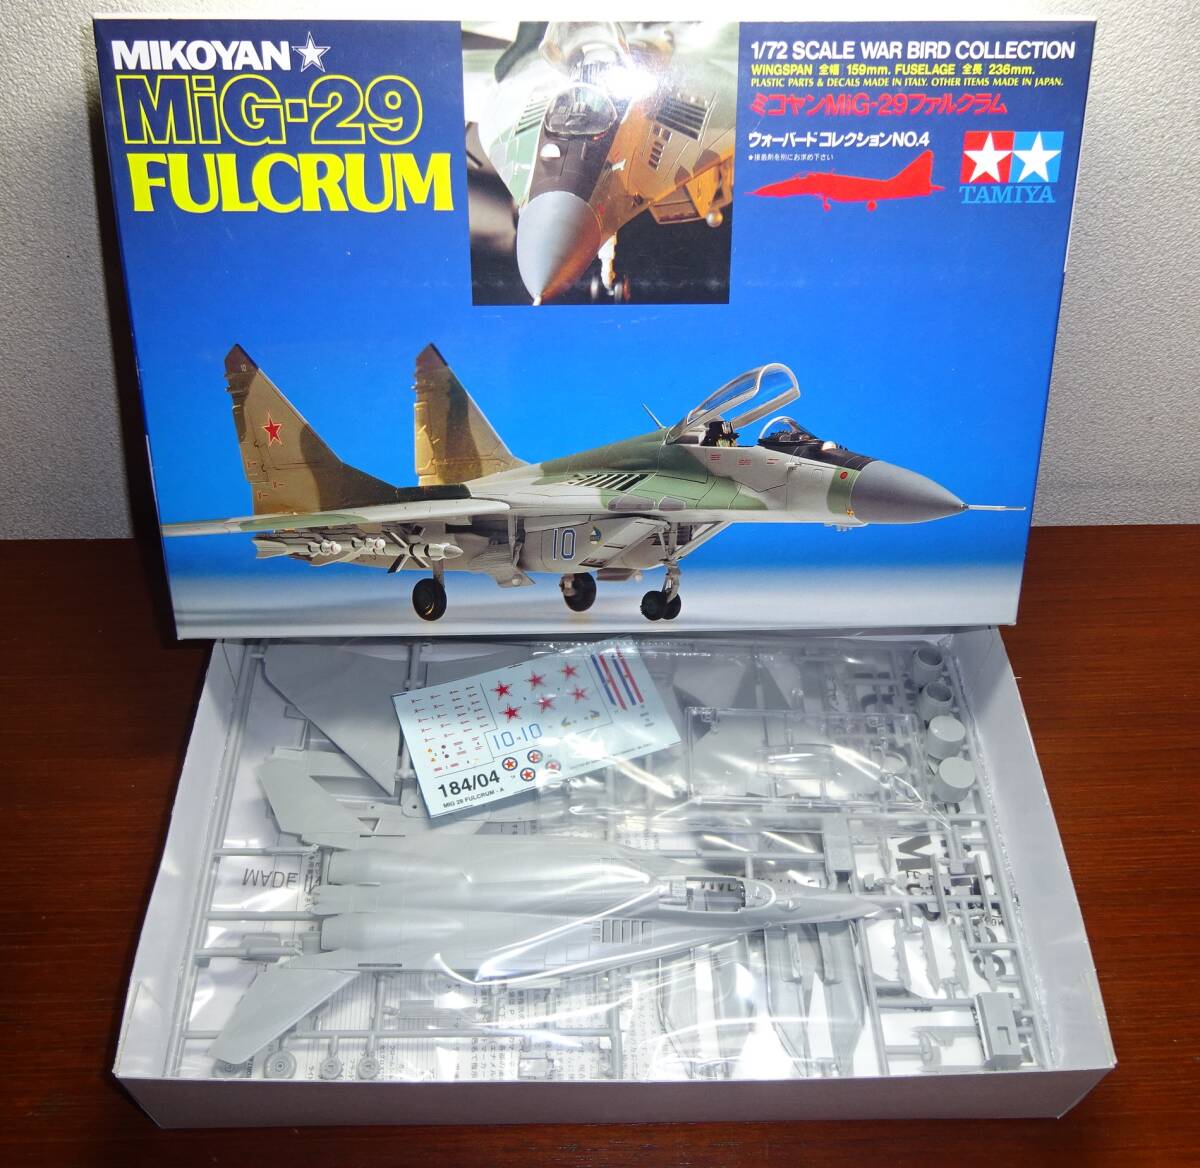 タミヤ 1/72 ウォーバードコレクションNo.4  「ミコヤン MiG-29 ファルクラム FULCRUM」 未組立品の画像1